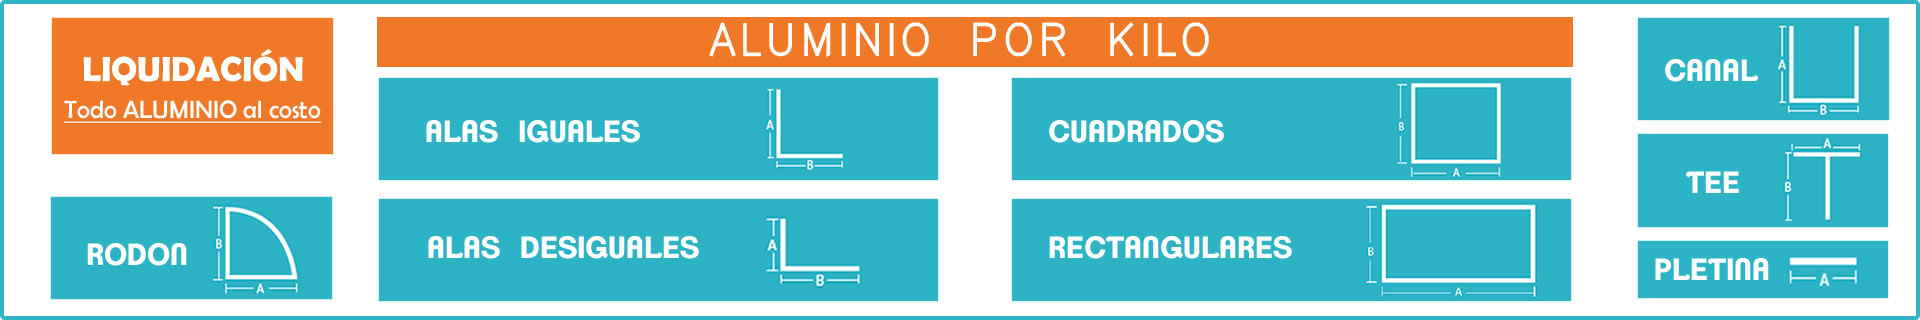 Baner_tipos_de_perfiles_aluminio-X-KILO